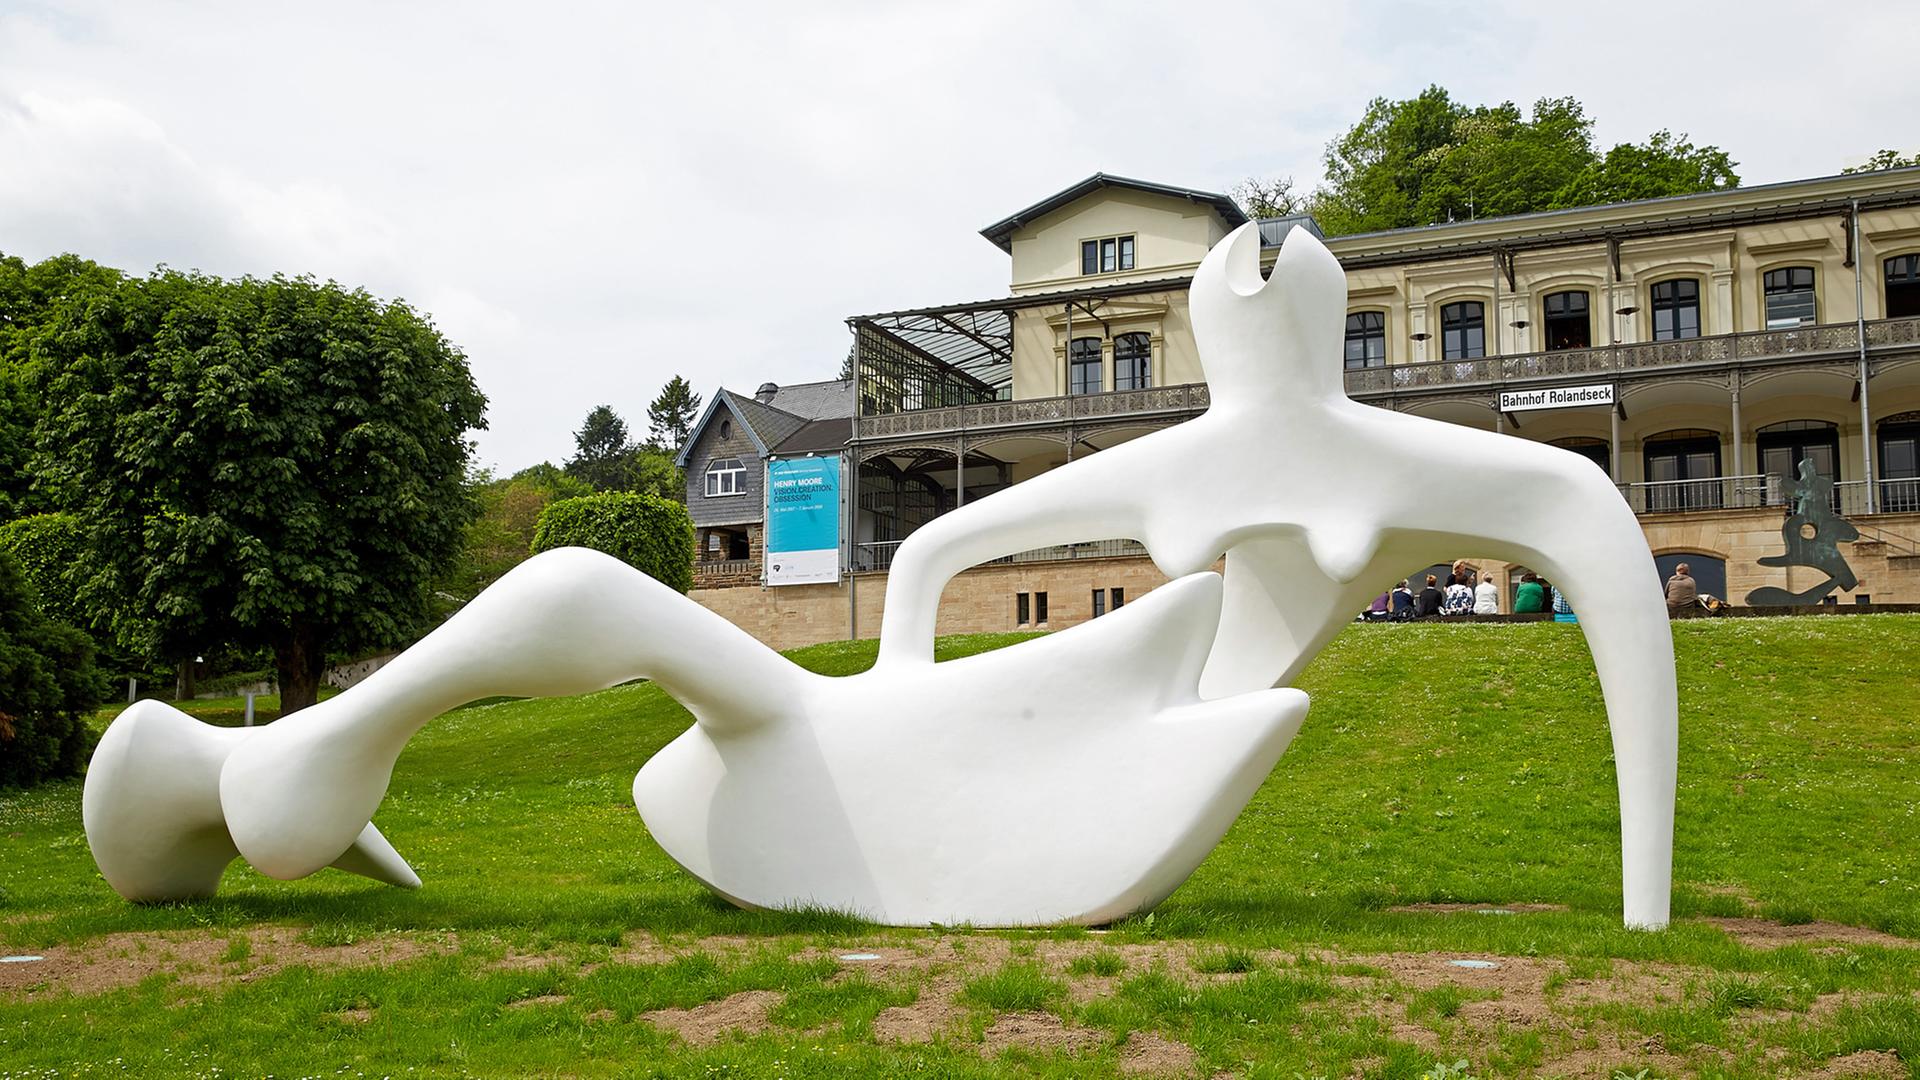 Die Skulptur "Large reclining figure, 1984" von Henry Moore ist vor dem Arp-Museum in Remagen-Rolandseck zu sehen.